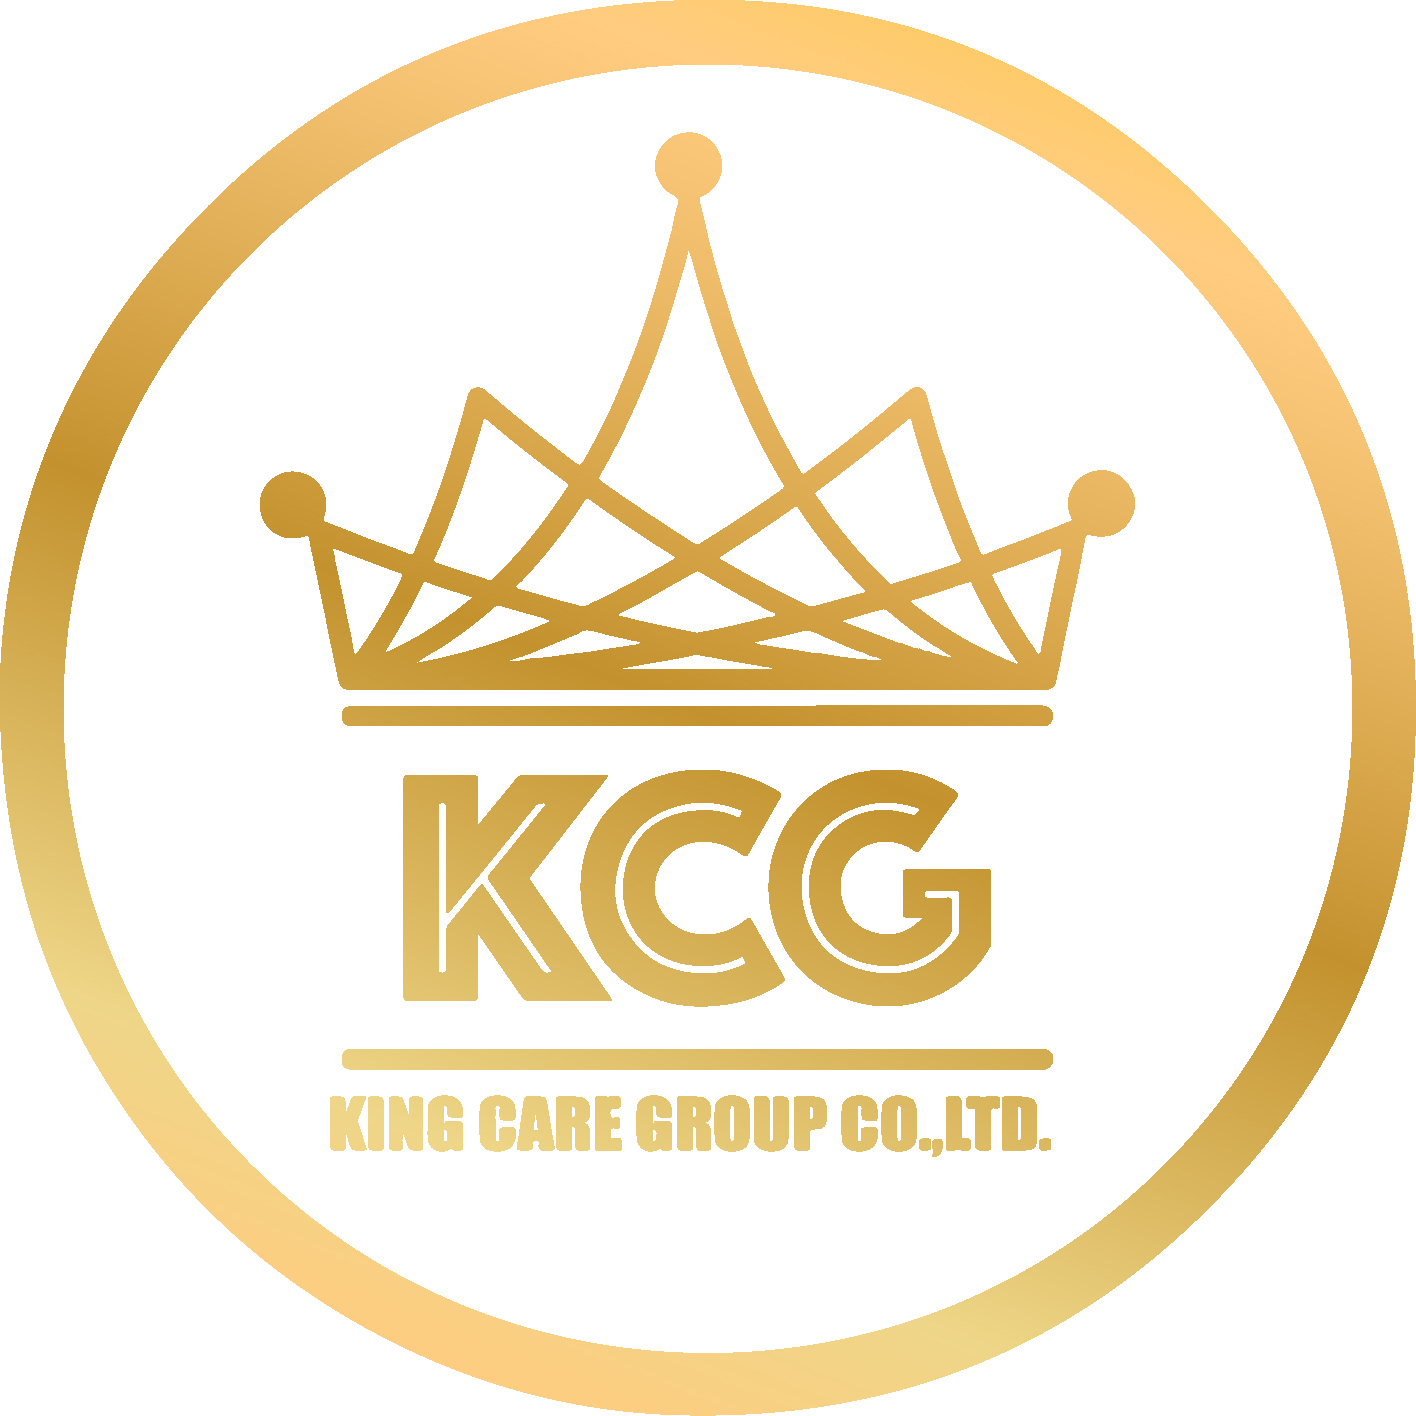 King Care Group Co., Ltd., บริษัท คิง แคร์ กรุ๊ป จำกัด